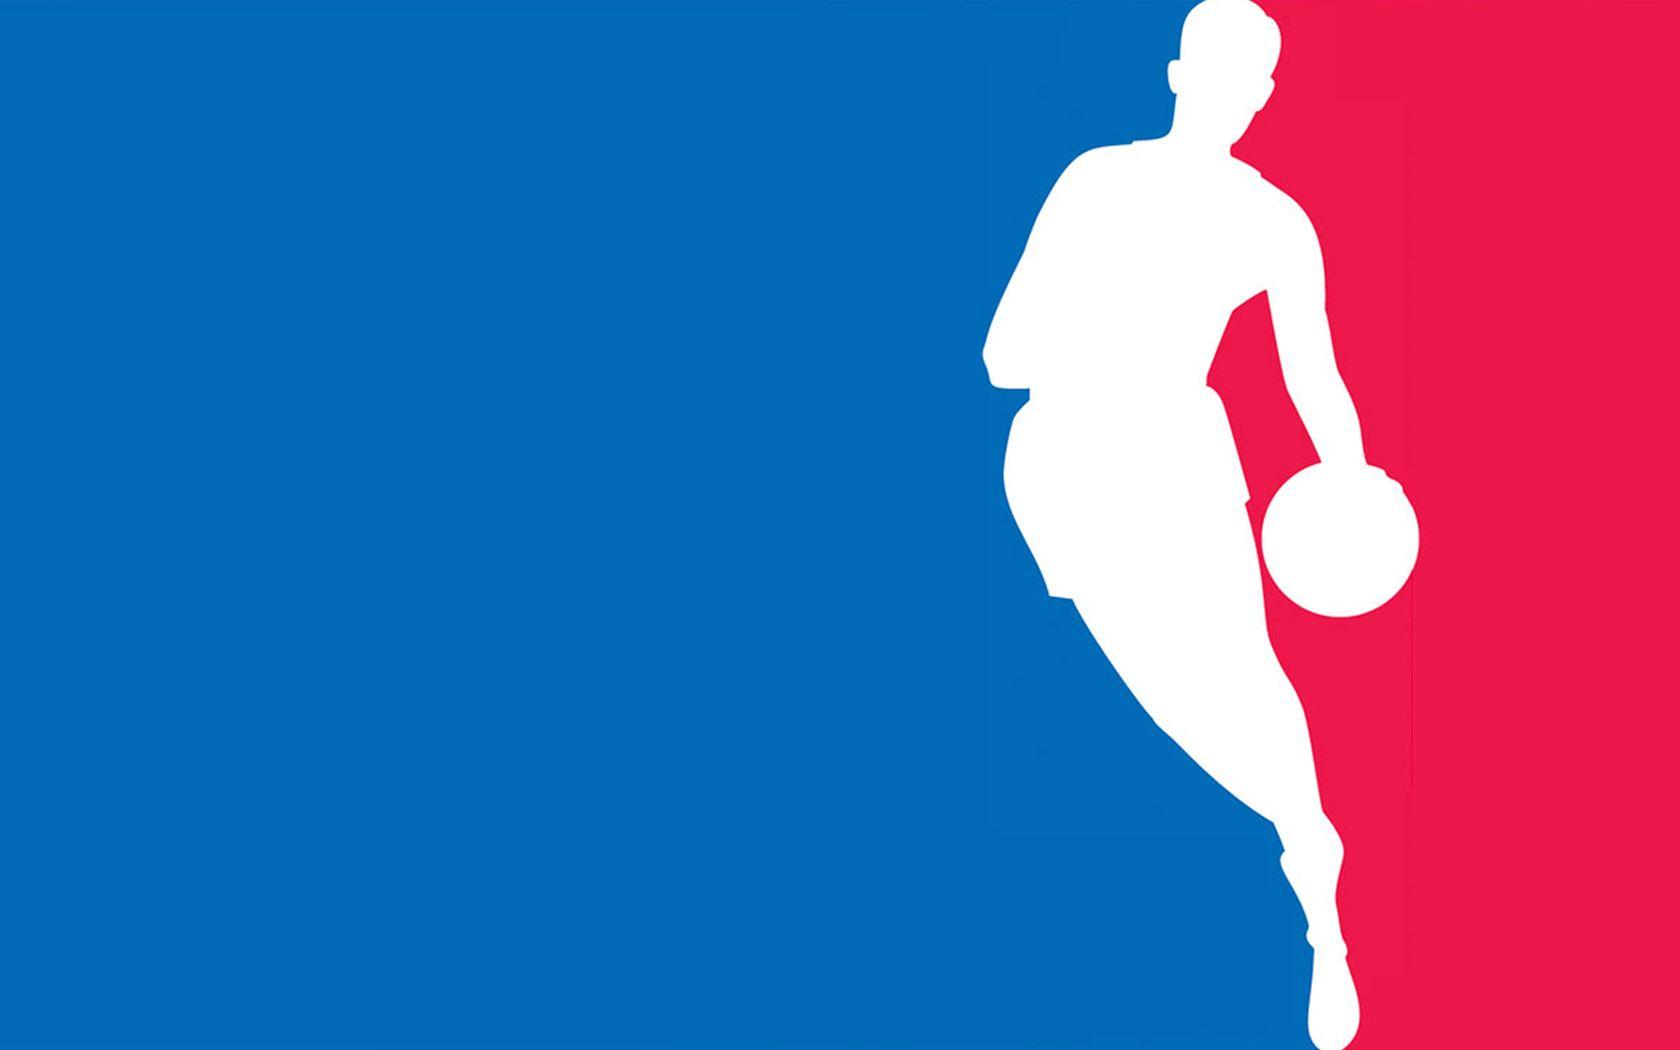 NBA Logo Wallpaper 41588 1680x1050 px